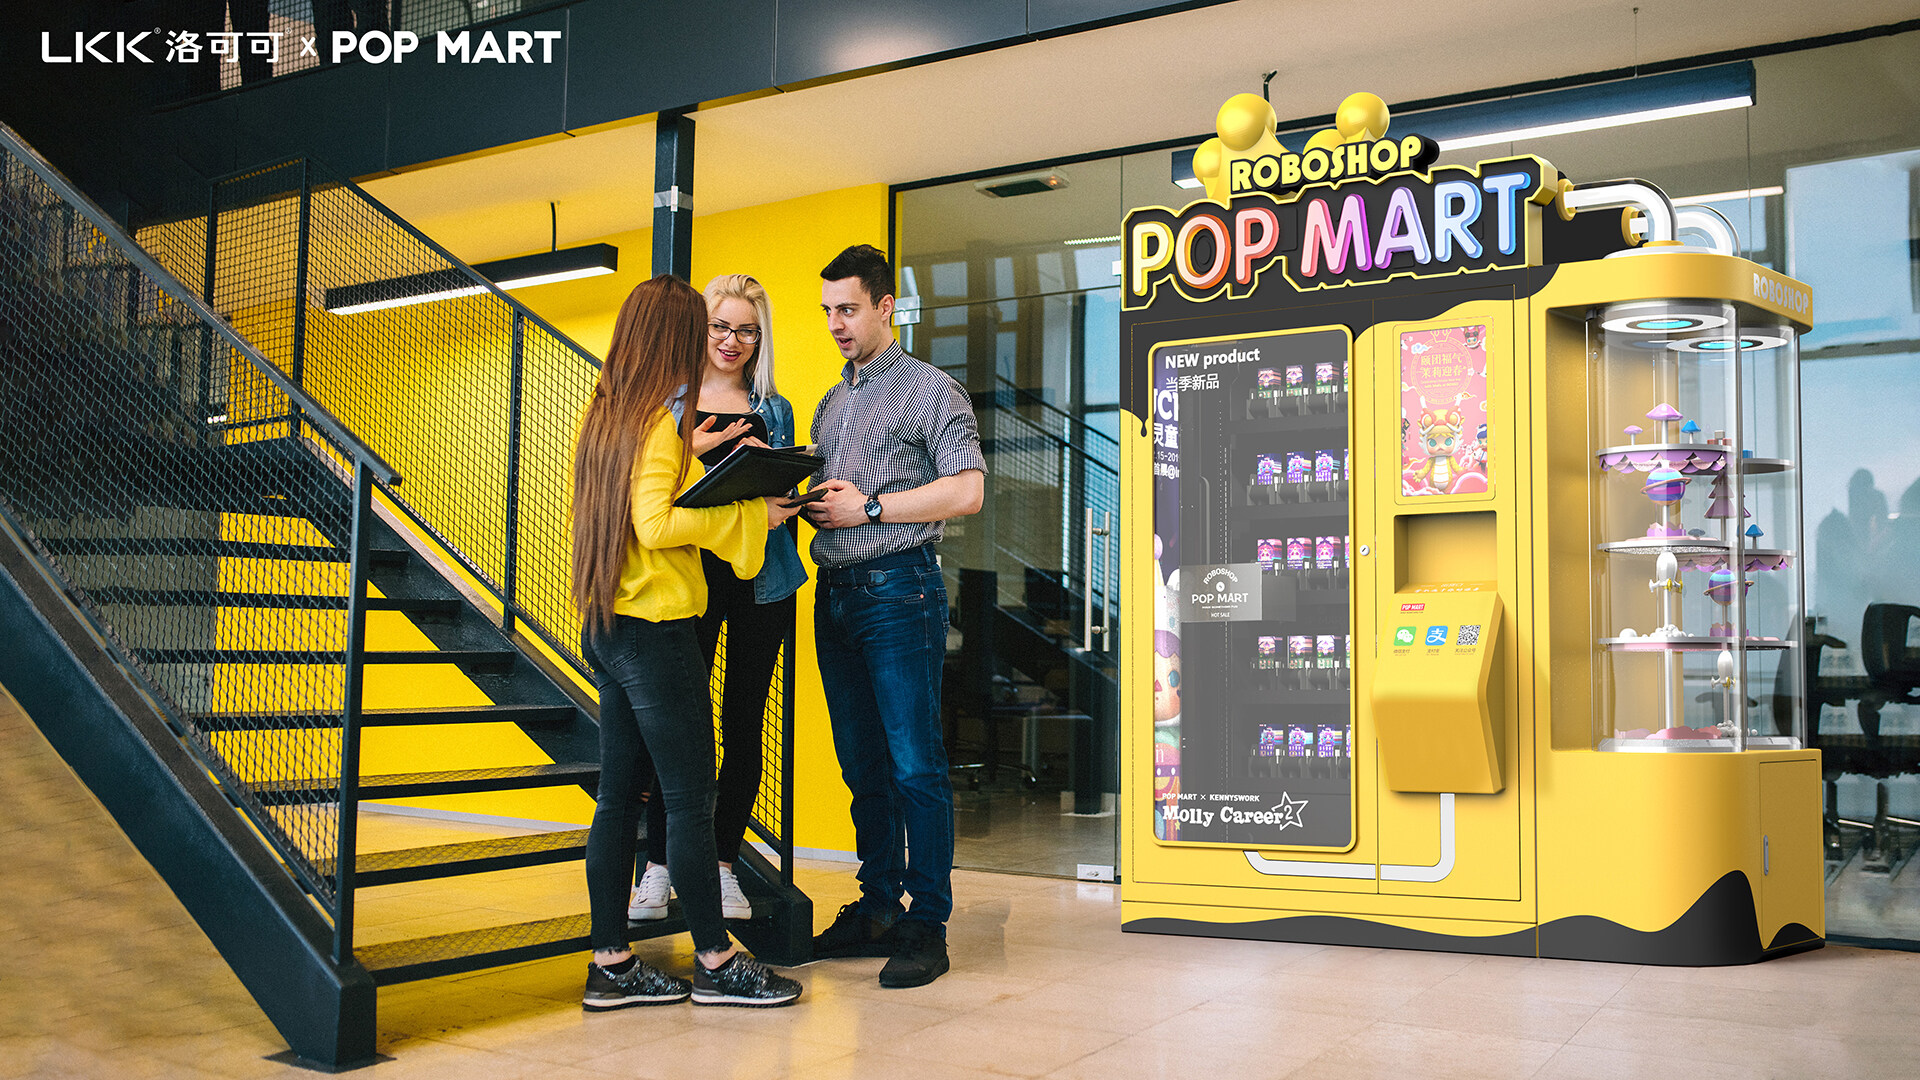 零售机器人设计-POP MART机器人商店